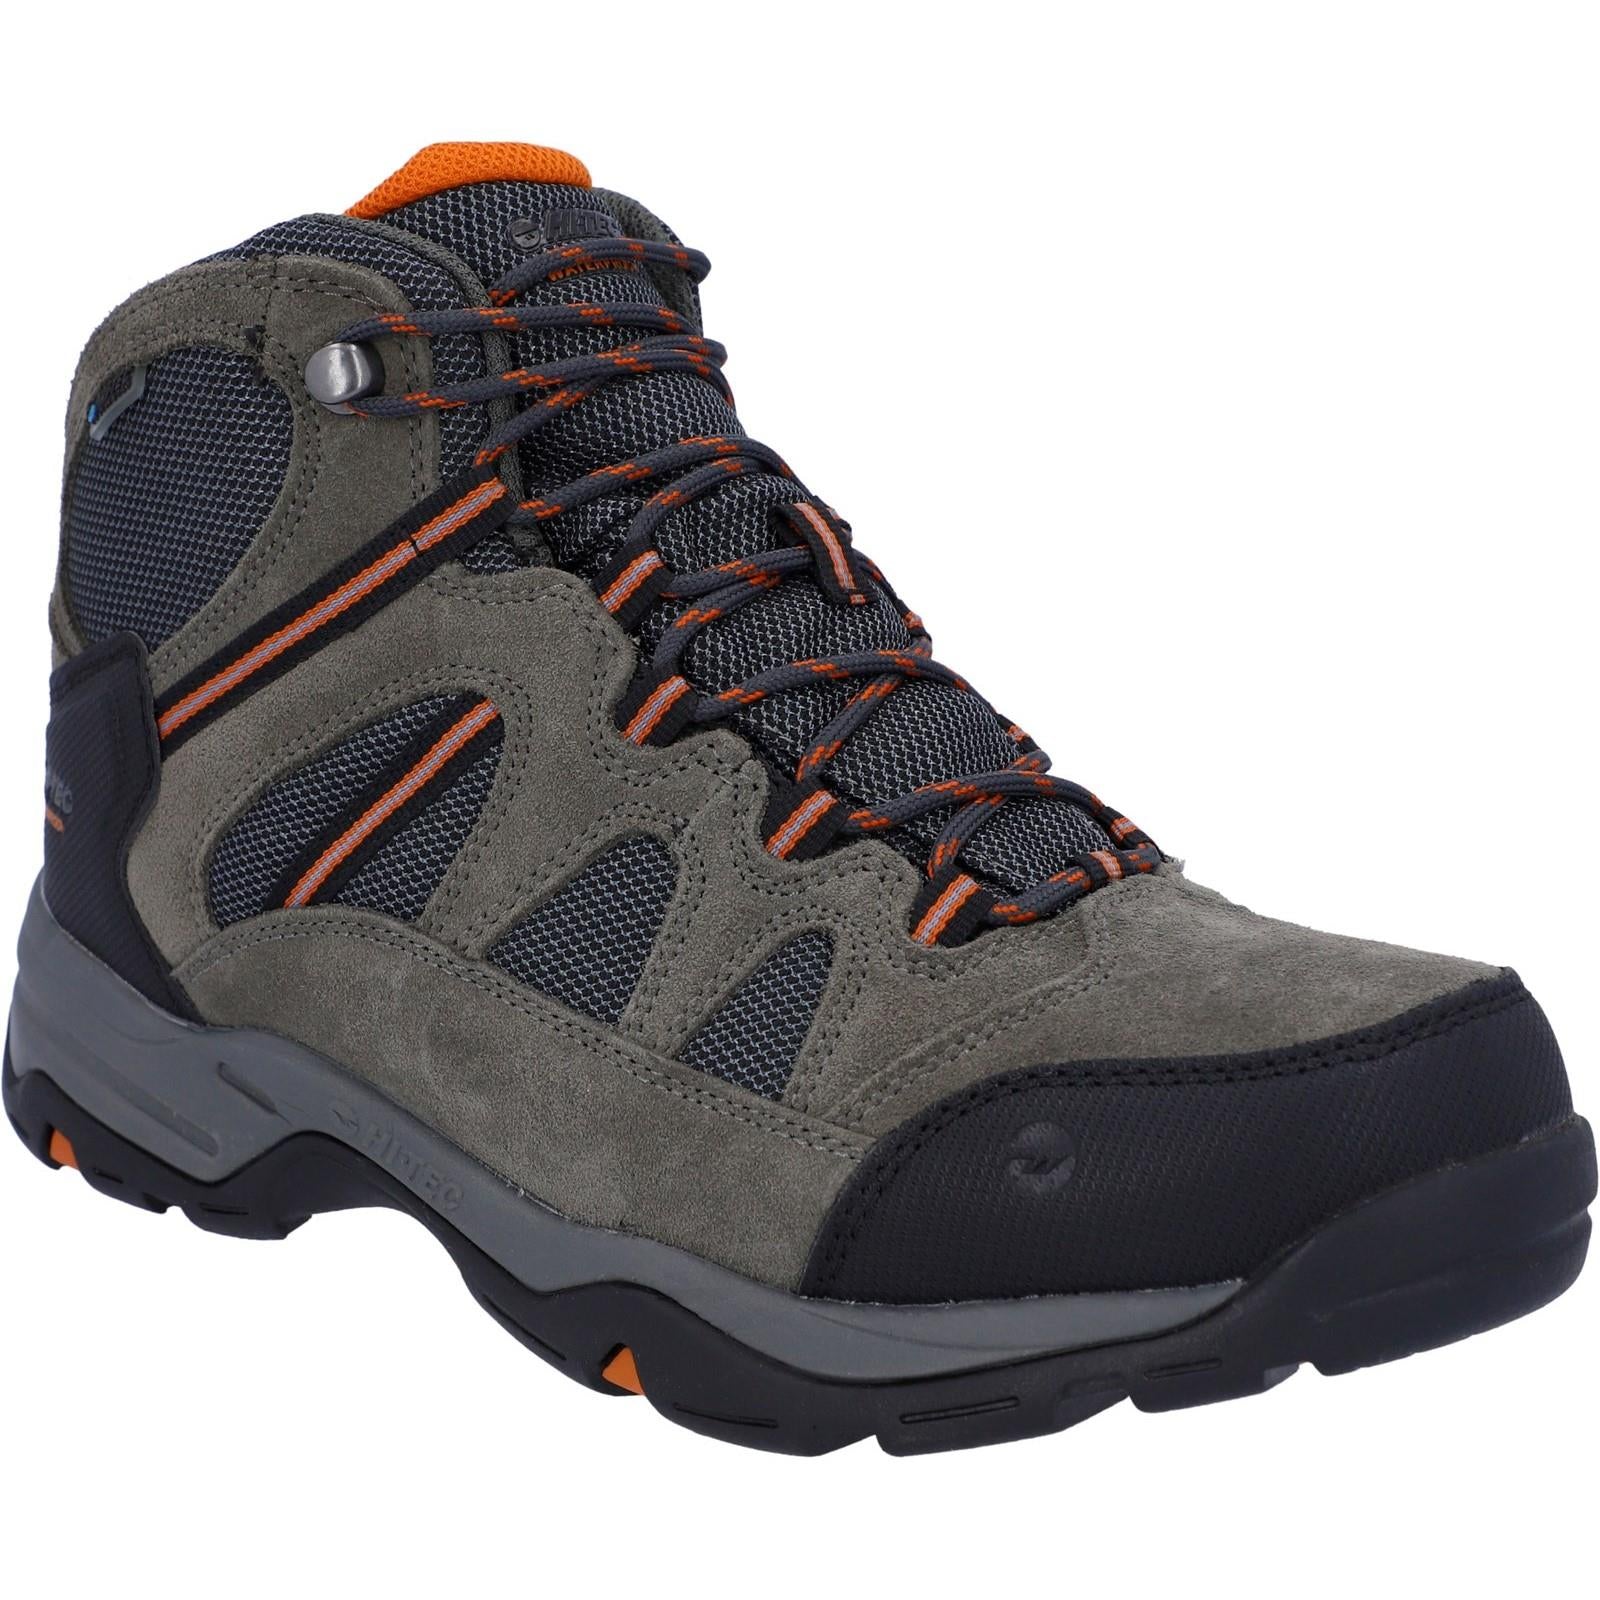 Hi-Tec Bandera II men's wide-fit waterproof breathable hiking/walking boot